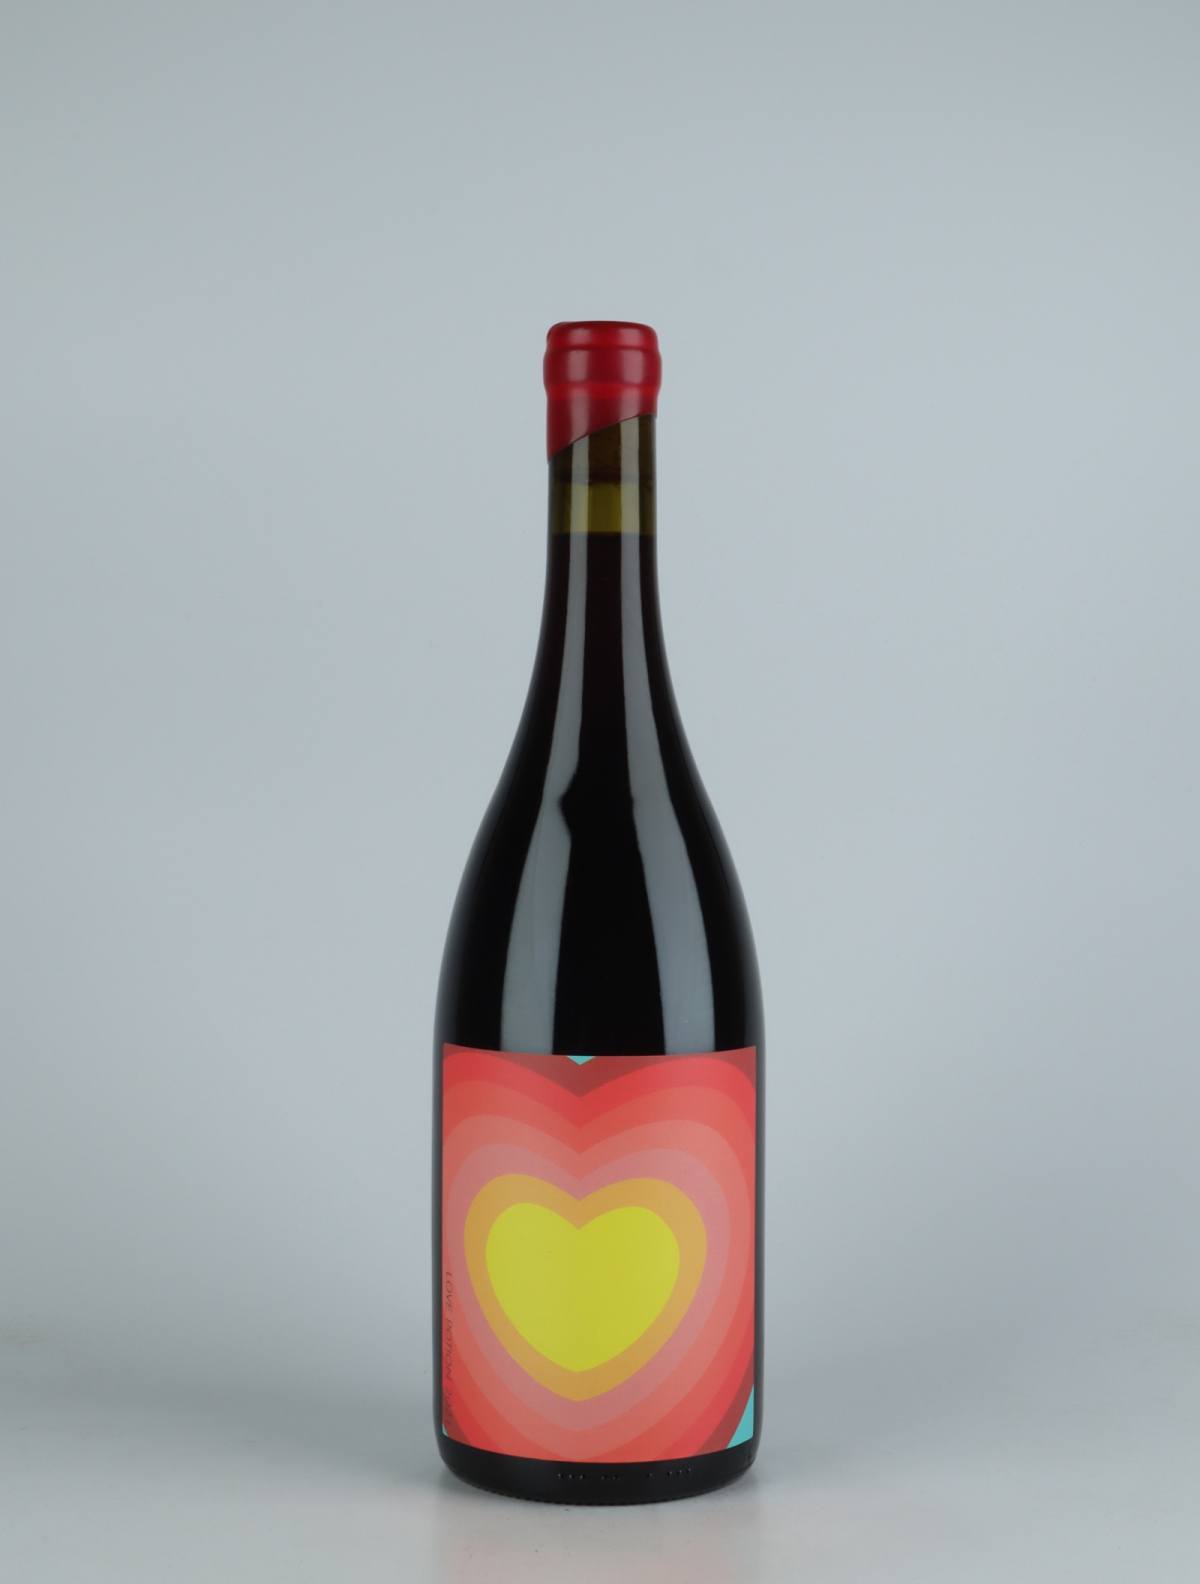 En flaske 2021 Love Potion Rødvin fra The Other Right, Adelaide Hills i Australien